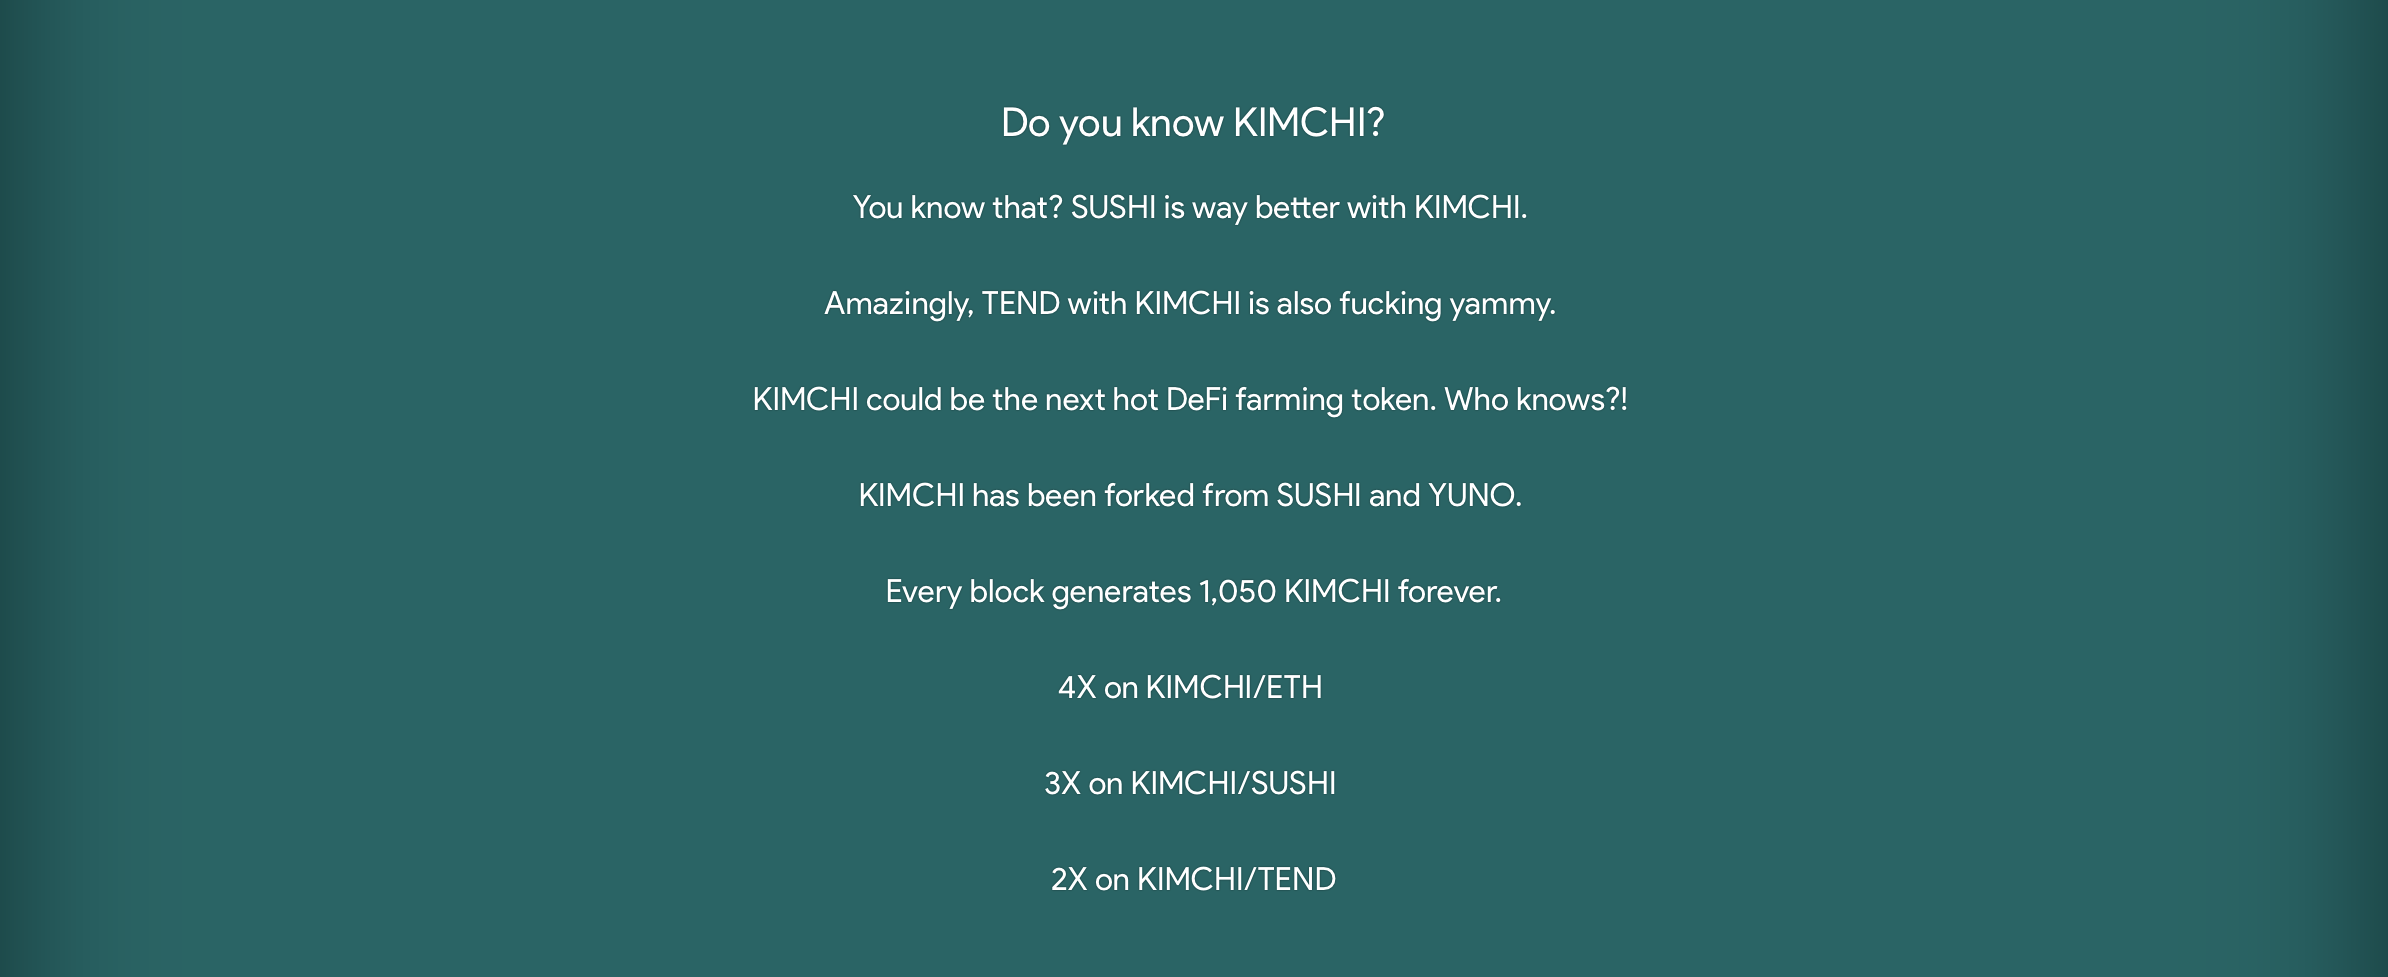 Kimchi explained